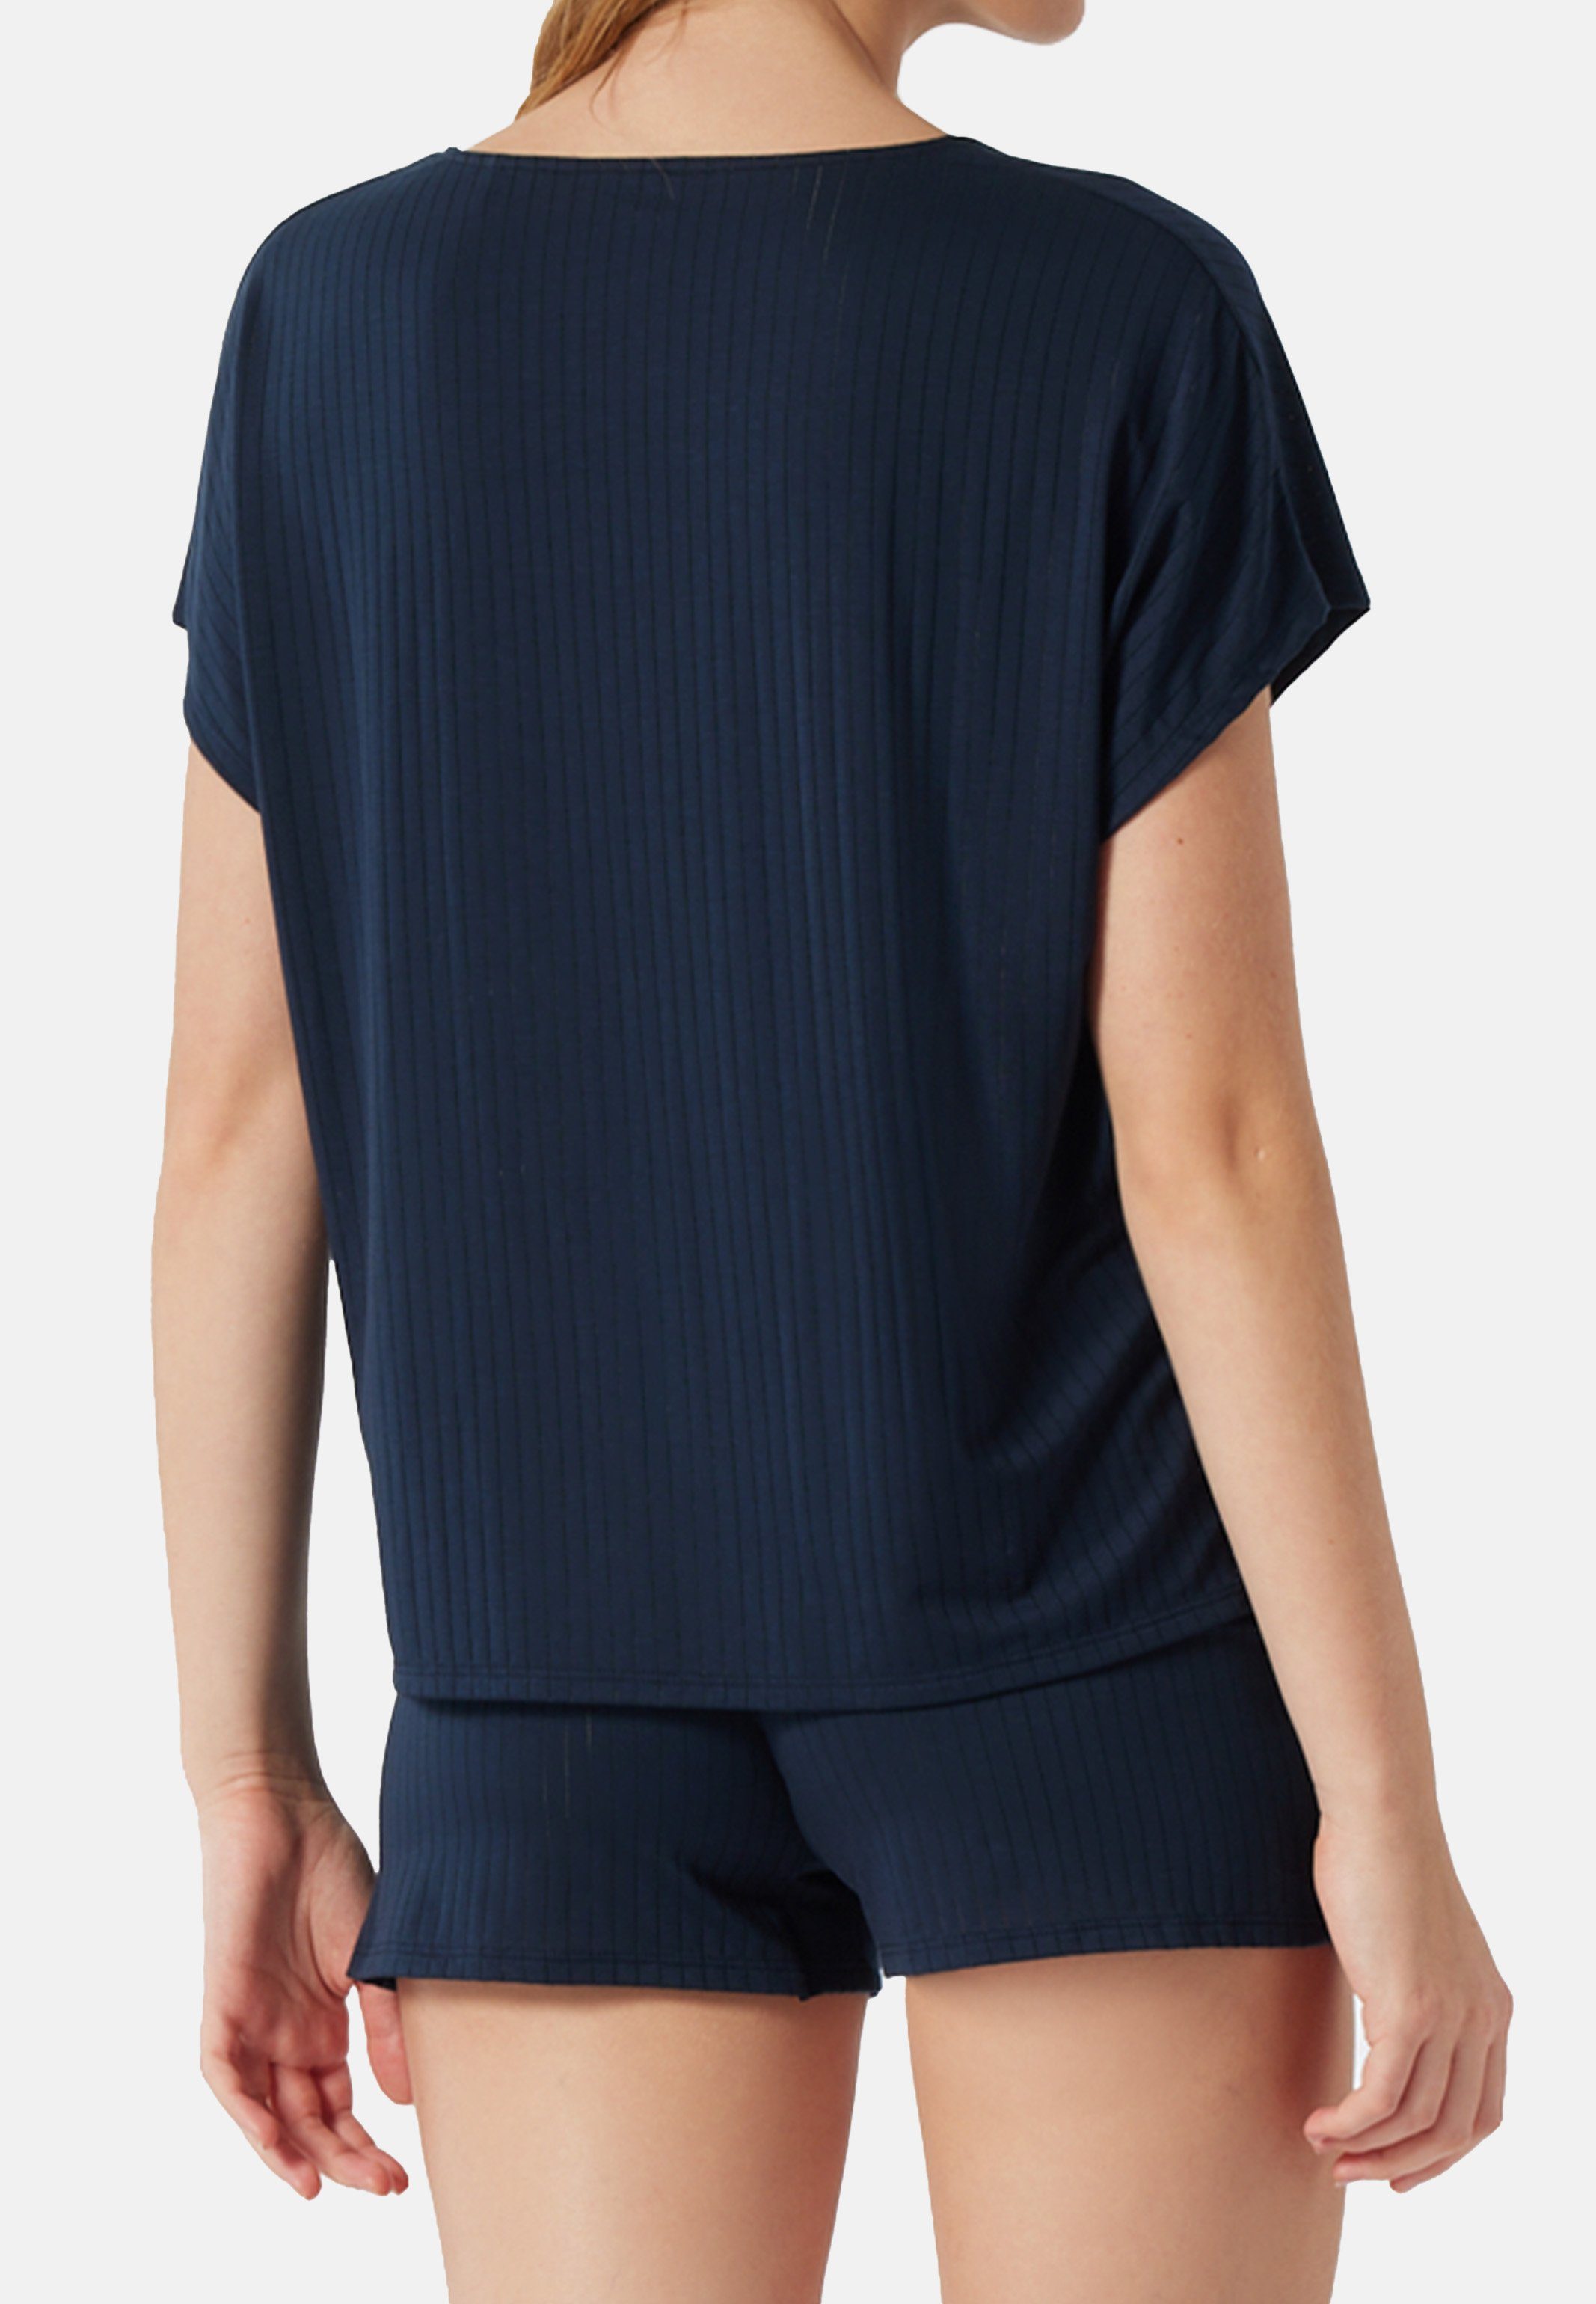 Schlafanzug Schiesser - (Set, Selected Fledermausärmeln Kurz Pyjama Dunkelblau mit 2 tlg) Oversized-Shirt Premium